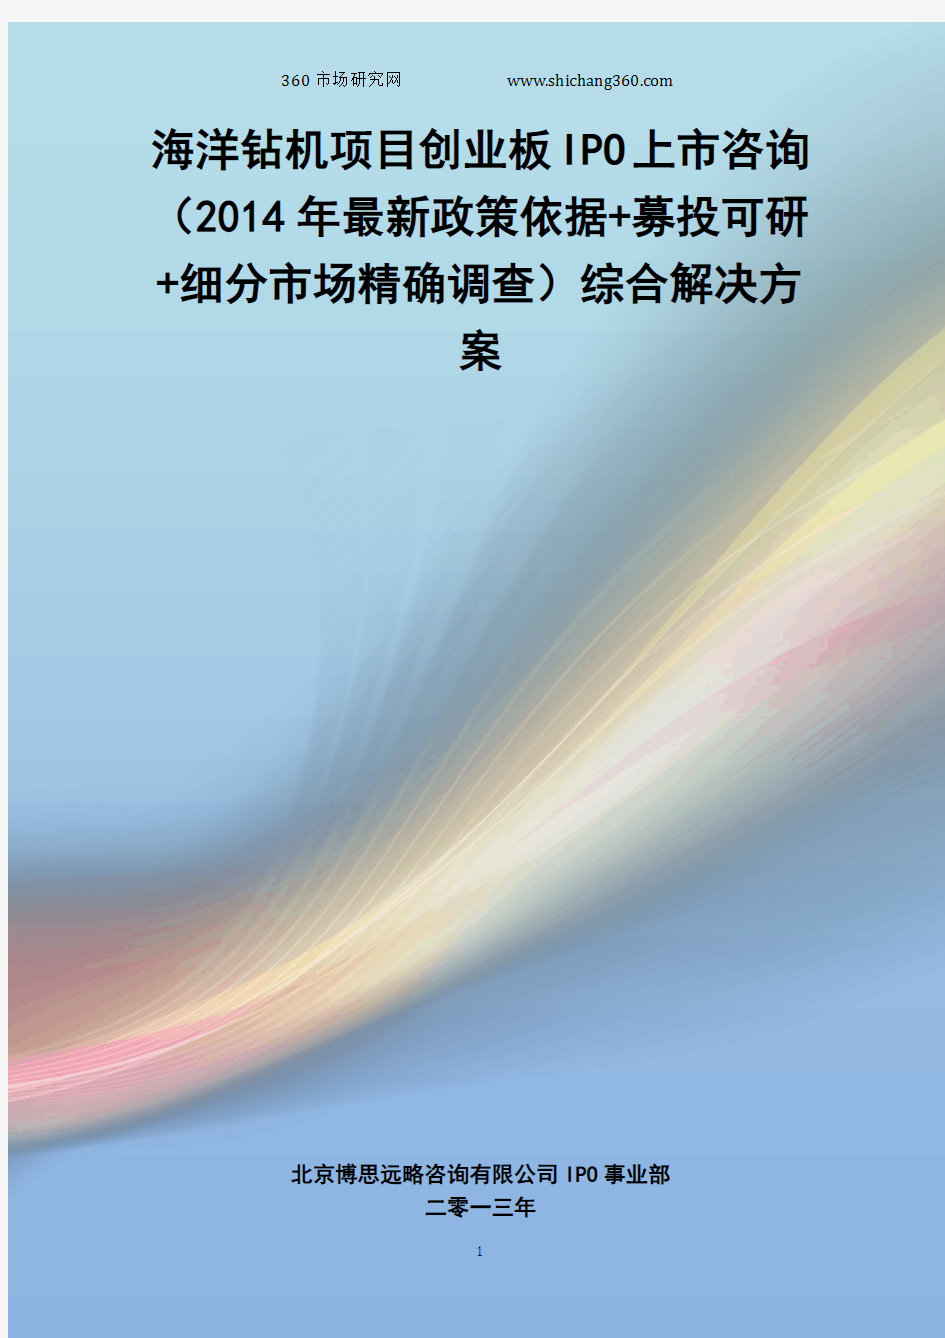 海洋钻机IPO上市咨询(2014年最新政策+募投可研+细分市场调查)综合解决方案